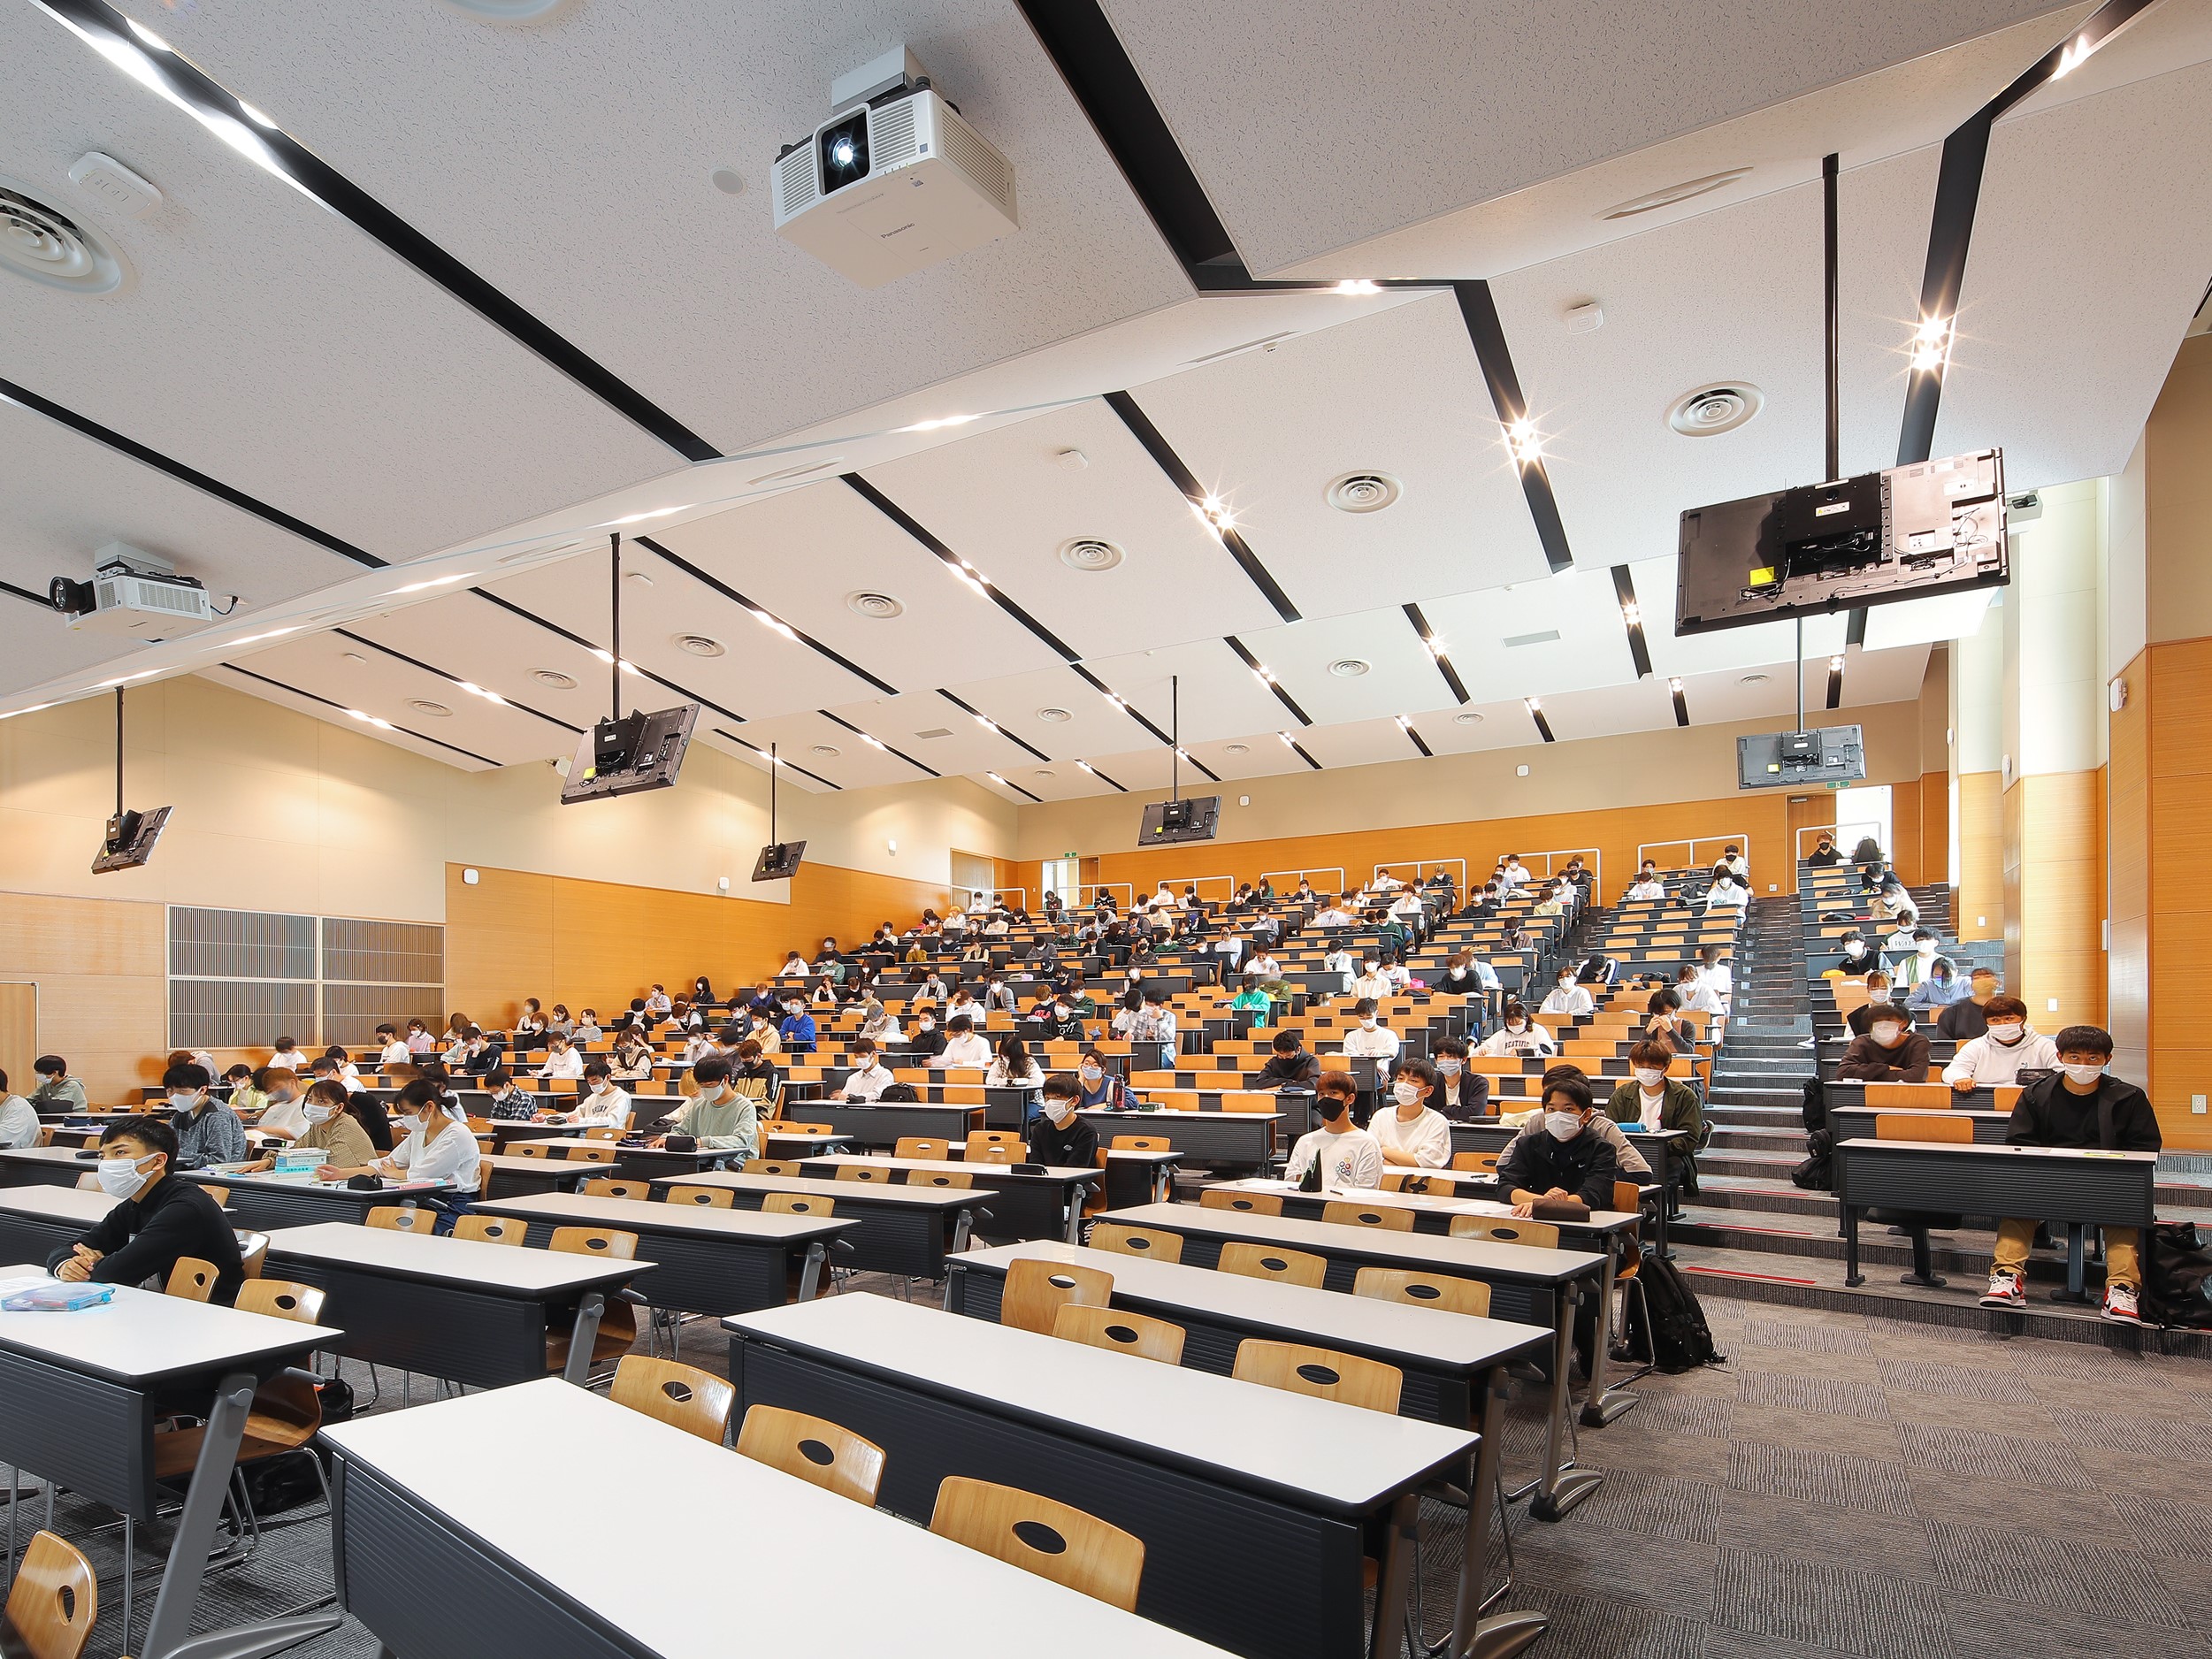 【40周年記念館】540名余りを収容可能な大講義室。